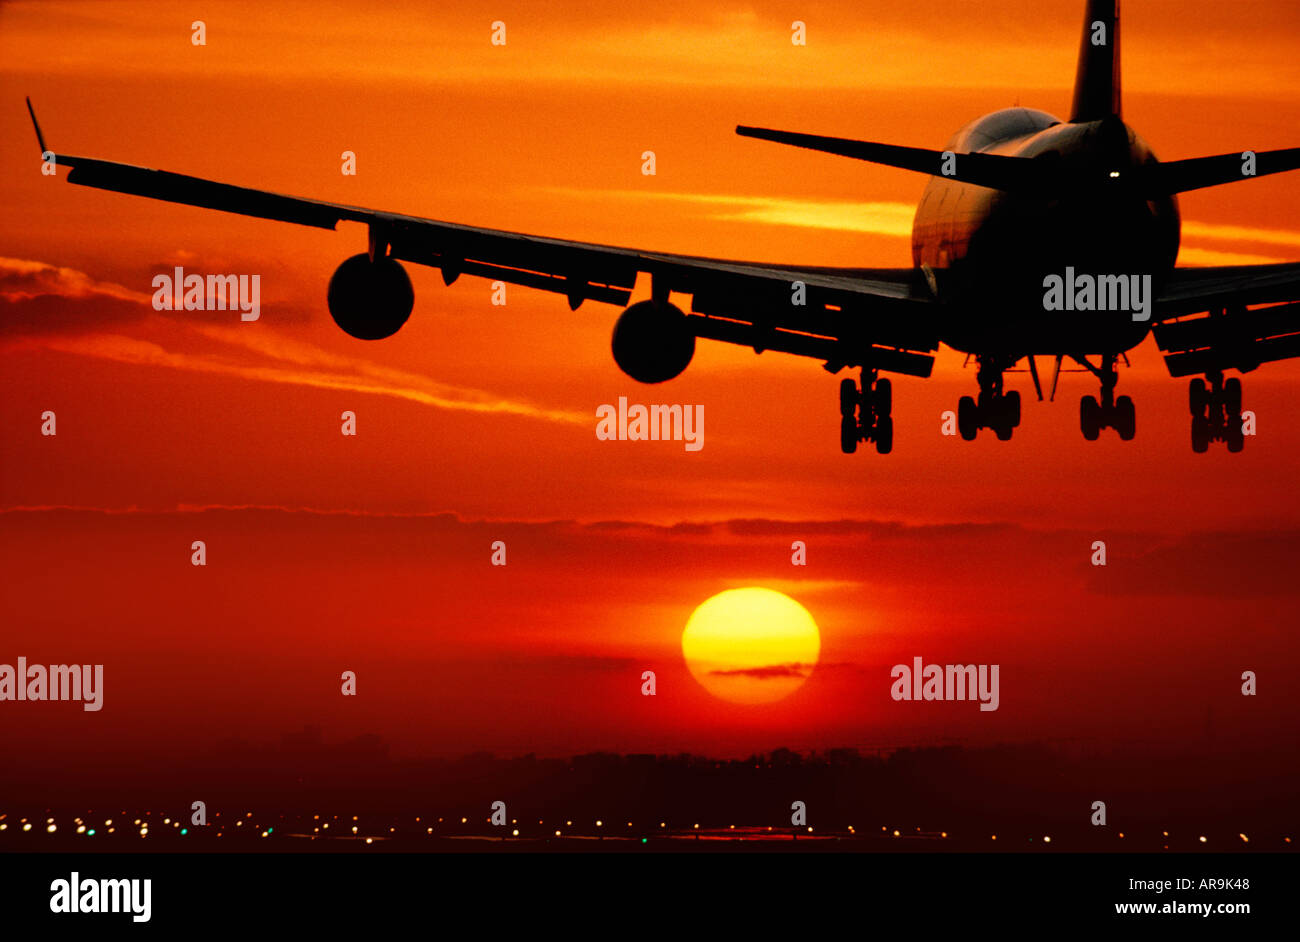 Boeing 747 jumbo jet airliner flying landing in an golden orange cloud sky at sunset Stock Photo